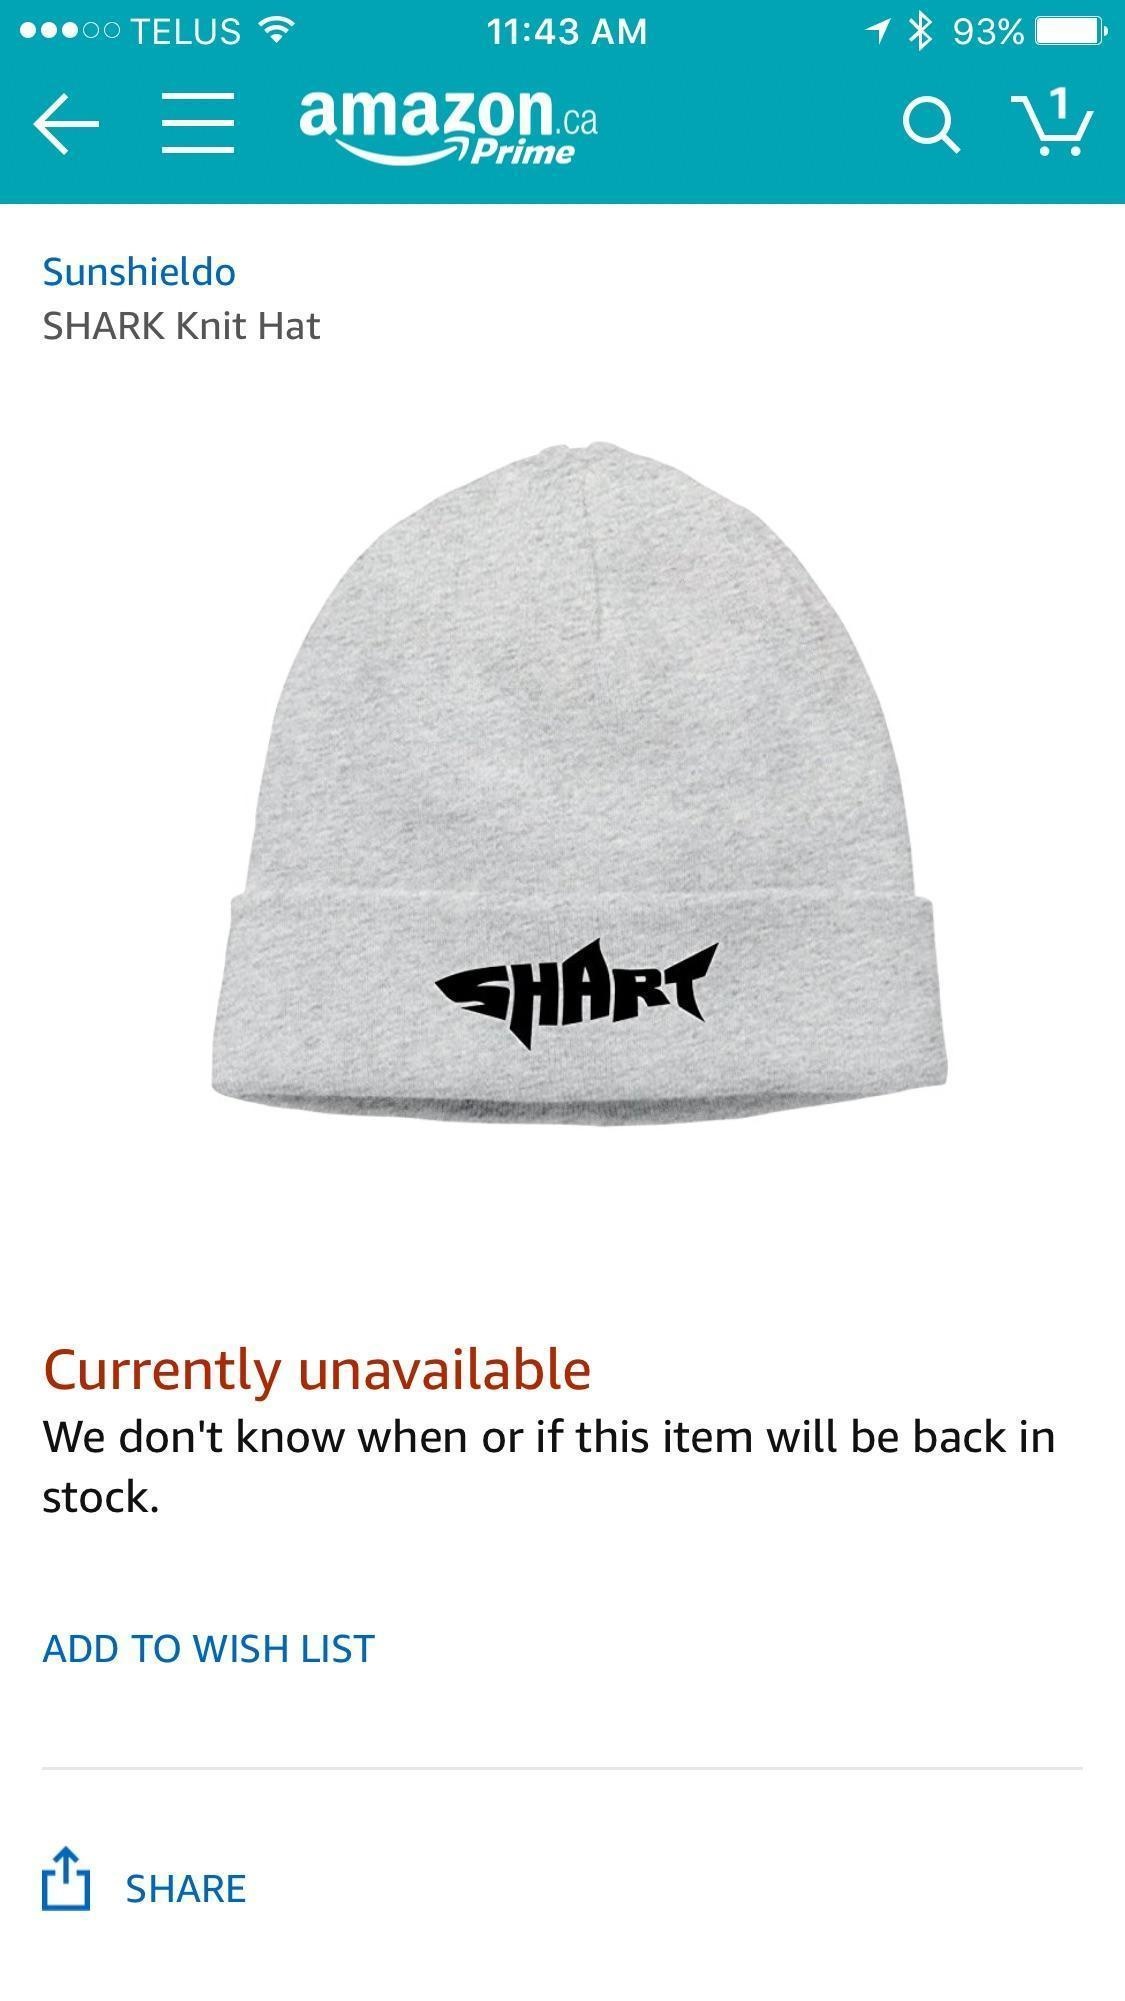 Shark hat that reads SHART